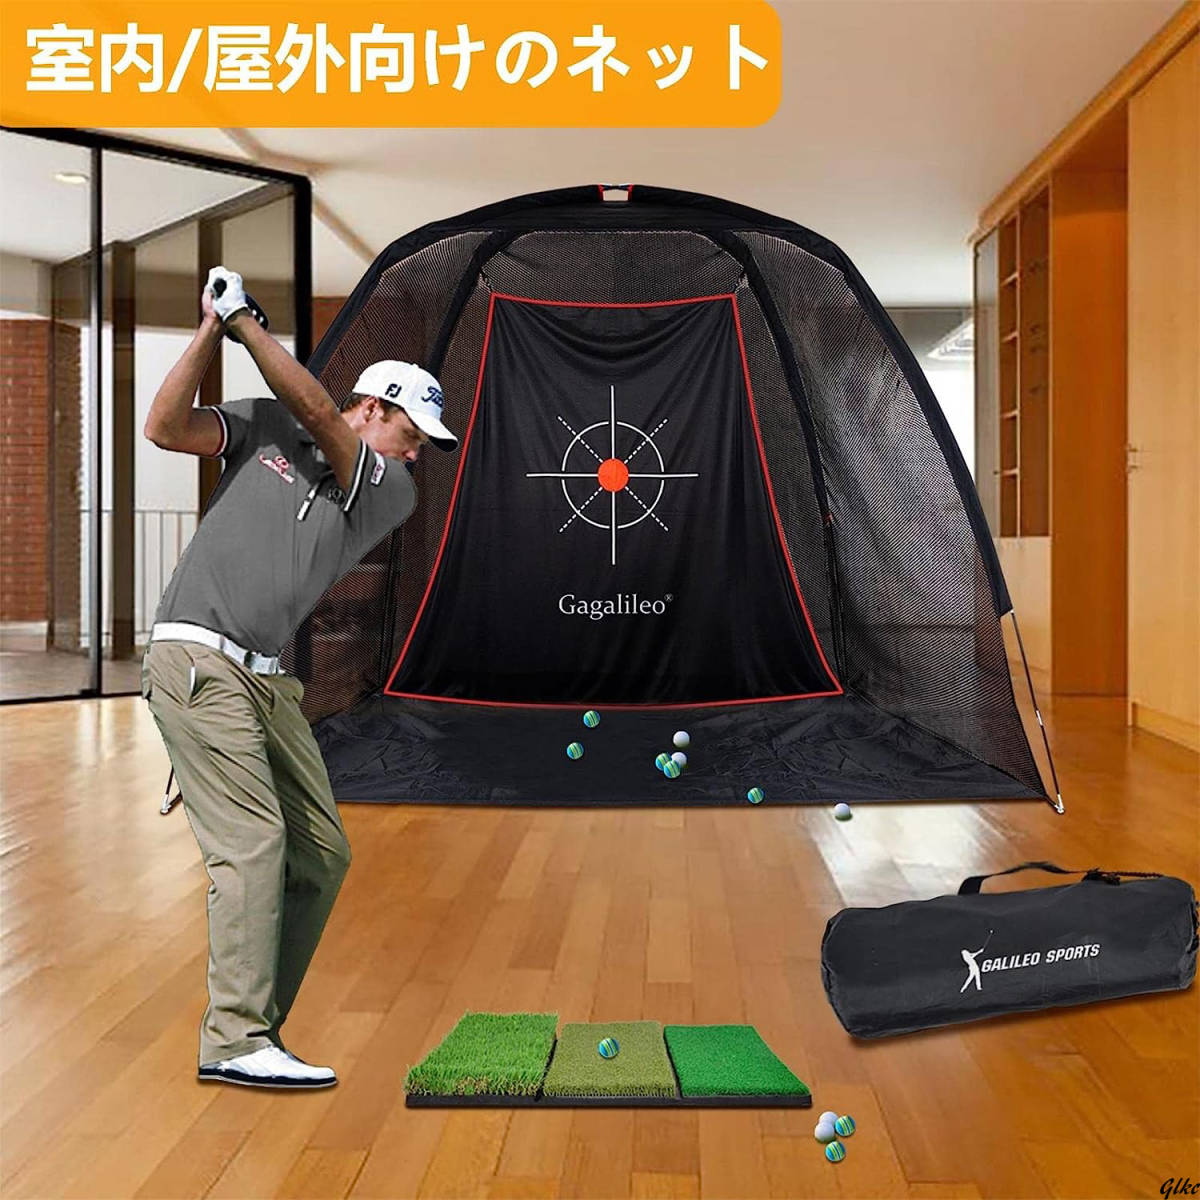 ゴルフネット 練習用 トレーニングネット 自宅 設置簡単 キャリーバッグ付き コンパクト 室内屋外